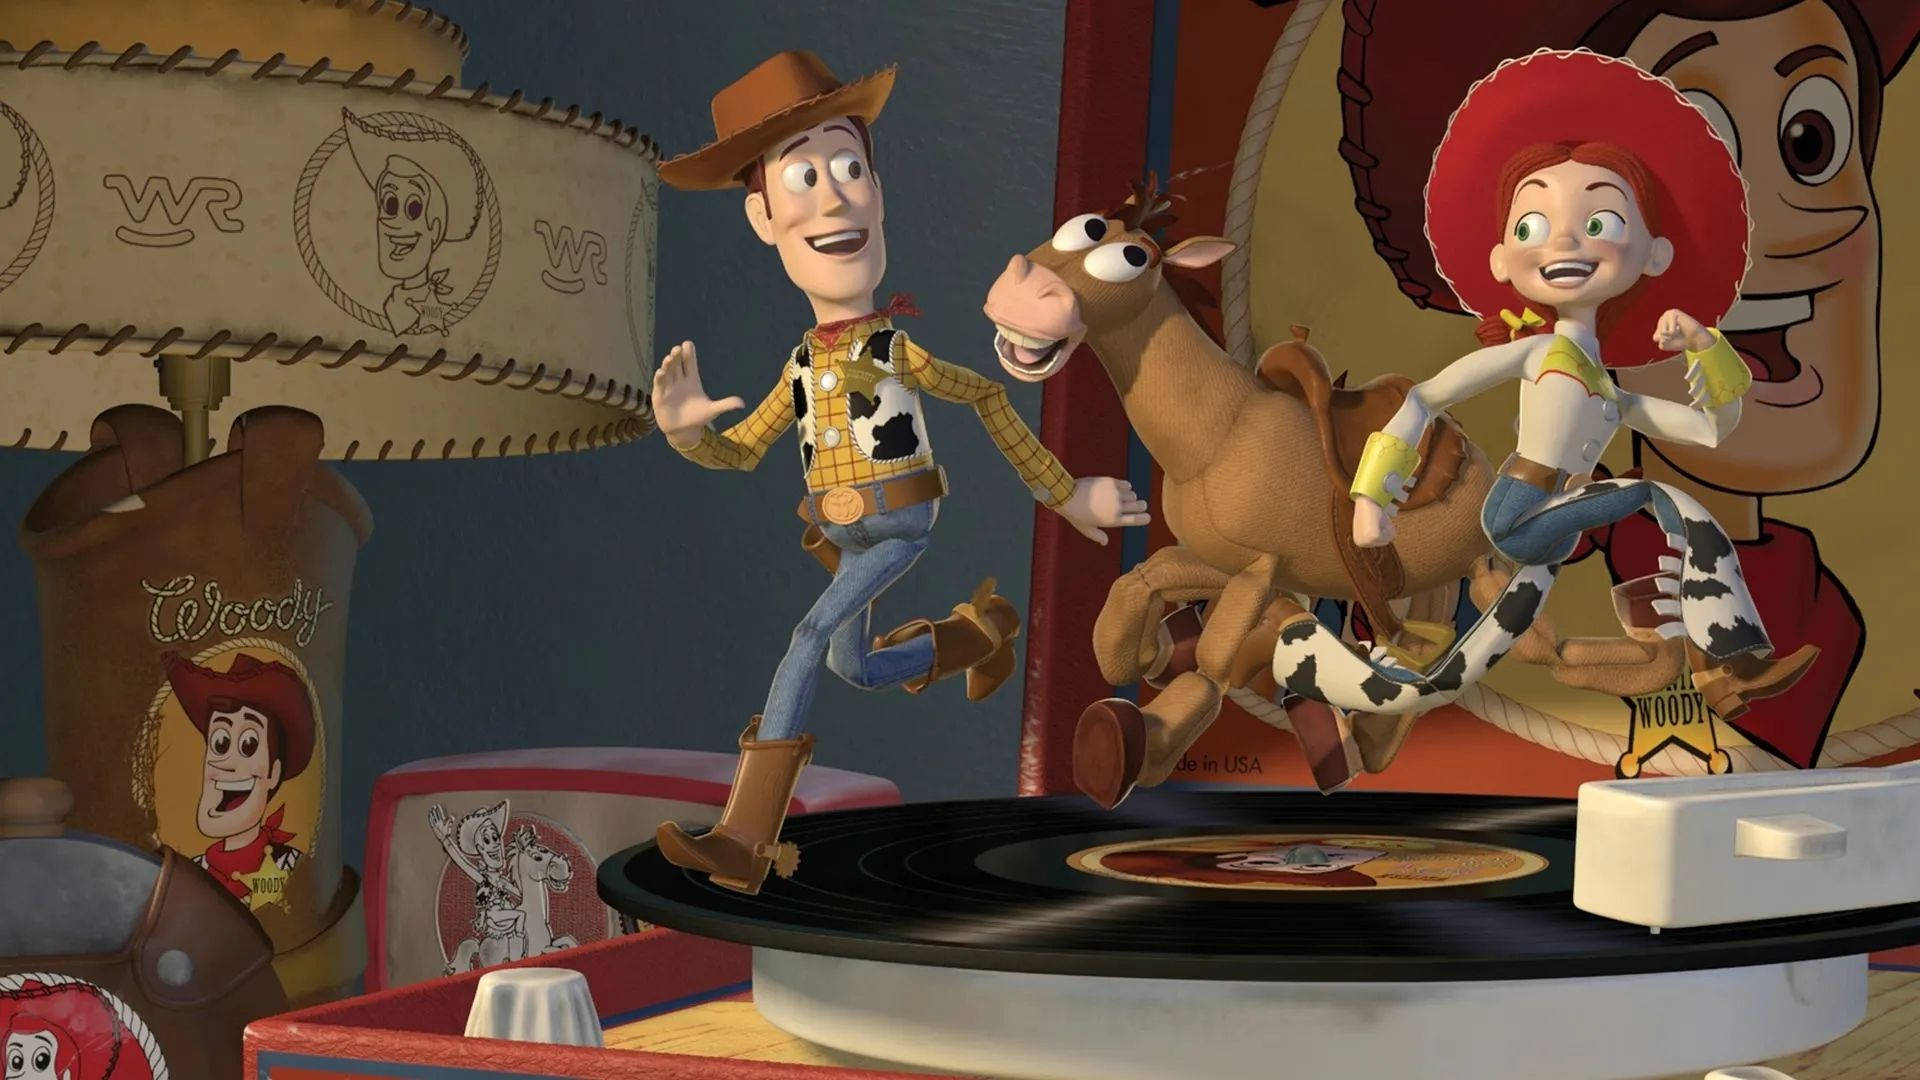 Skudmål Toy Story på Diskafspiller som en del af et dekoreret Disneyland tema. Wallpaper